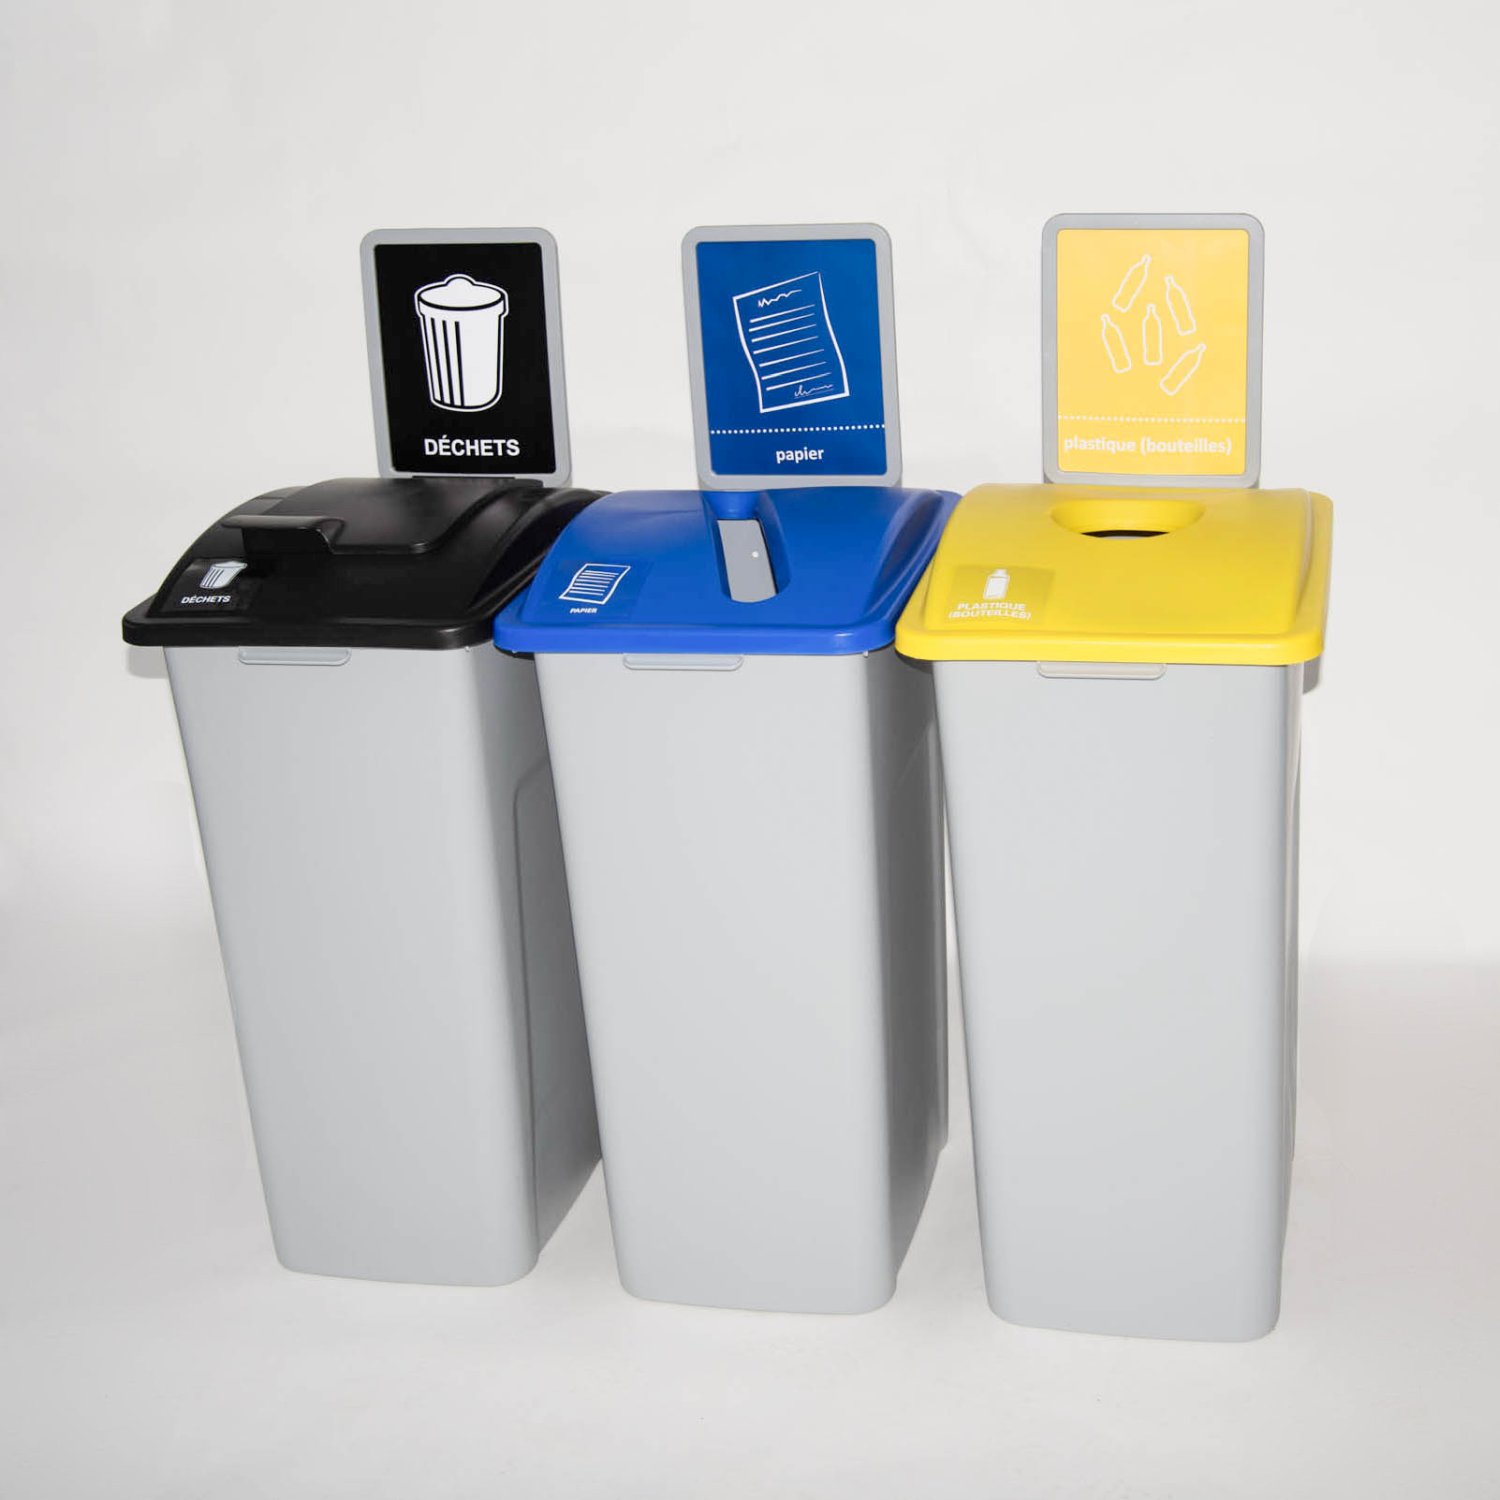 3 afvalbakken 121 liter, Waste Watchers (geel, blauw, zwart) detail 2